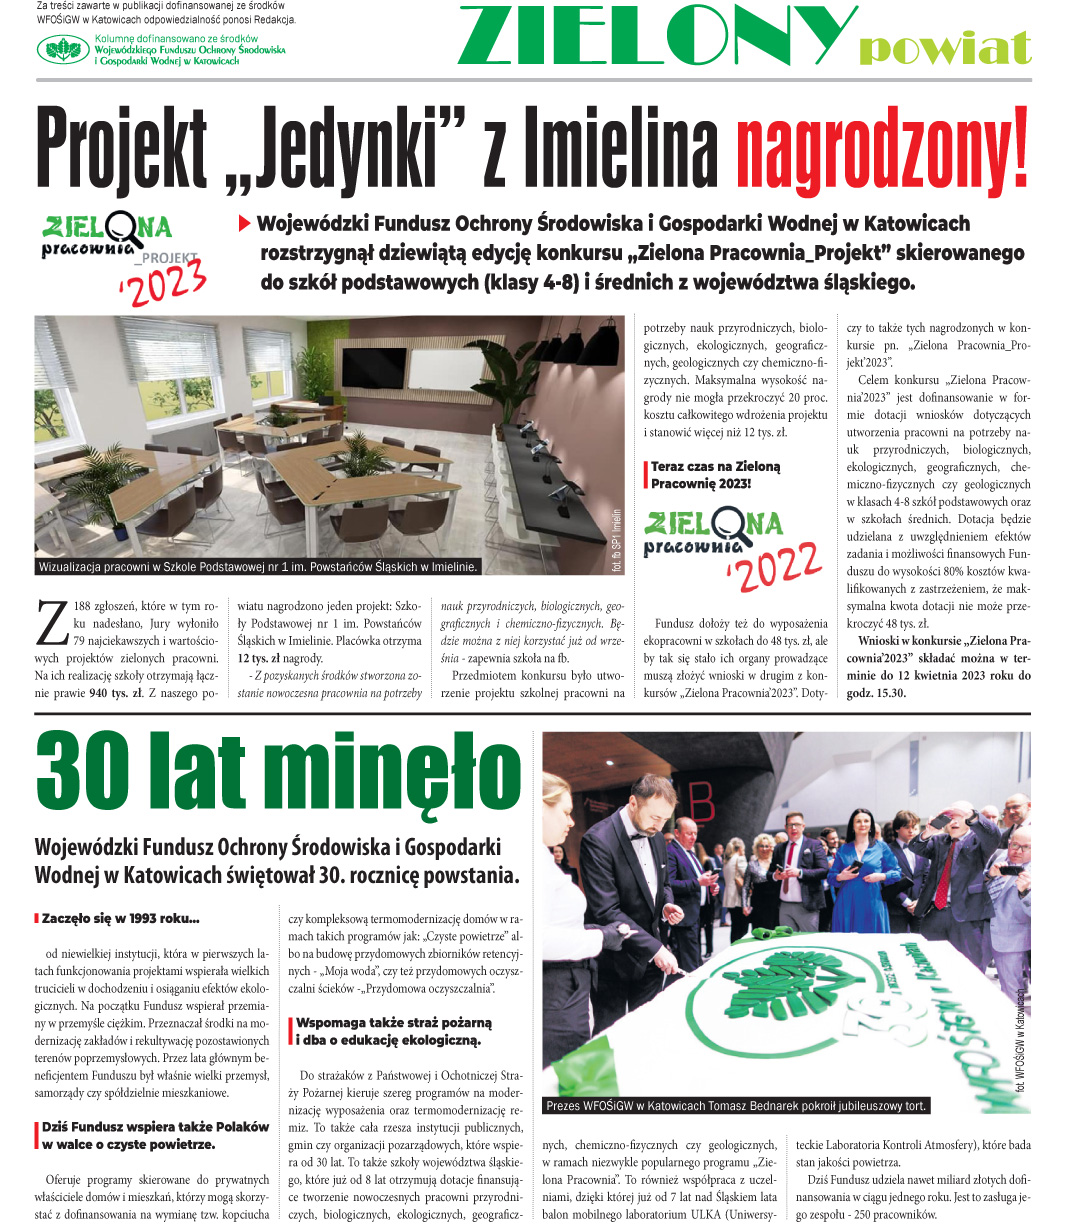 E-wydanie "Zielony powiat" - marzec 2023 str. 2